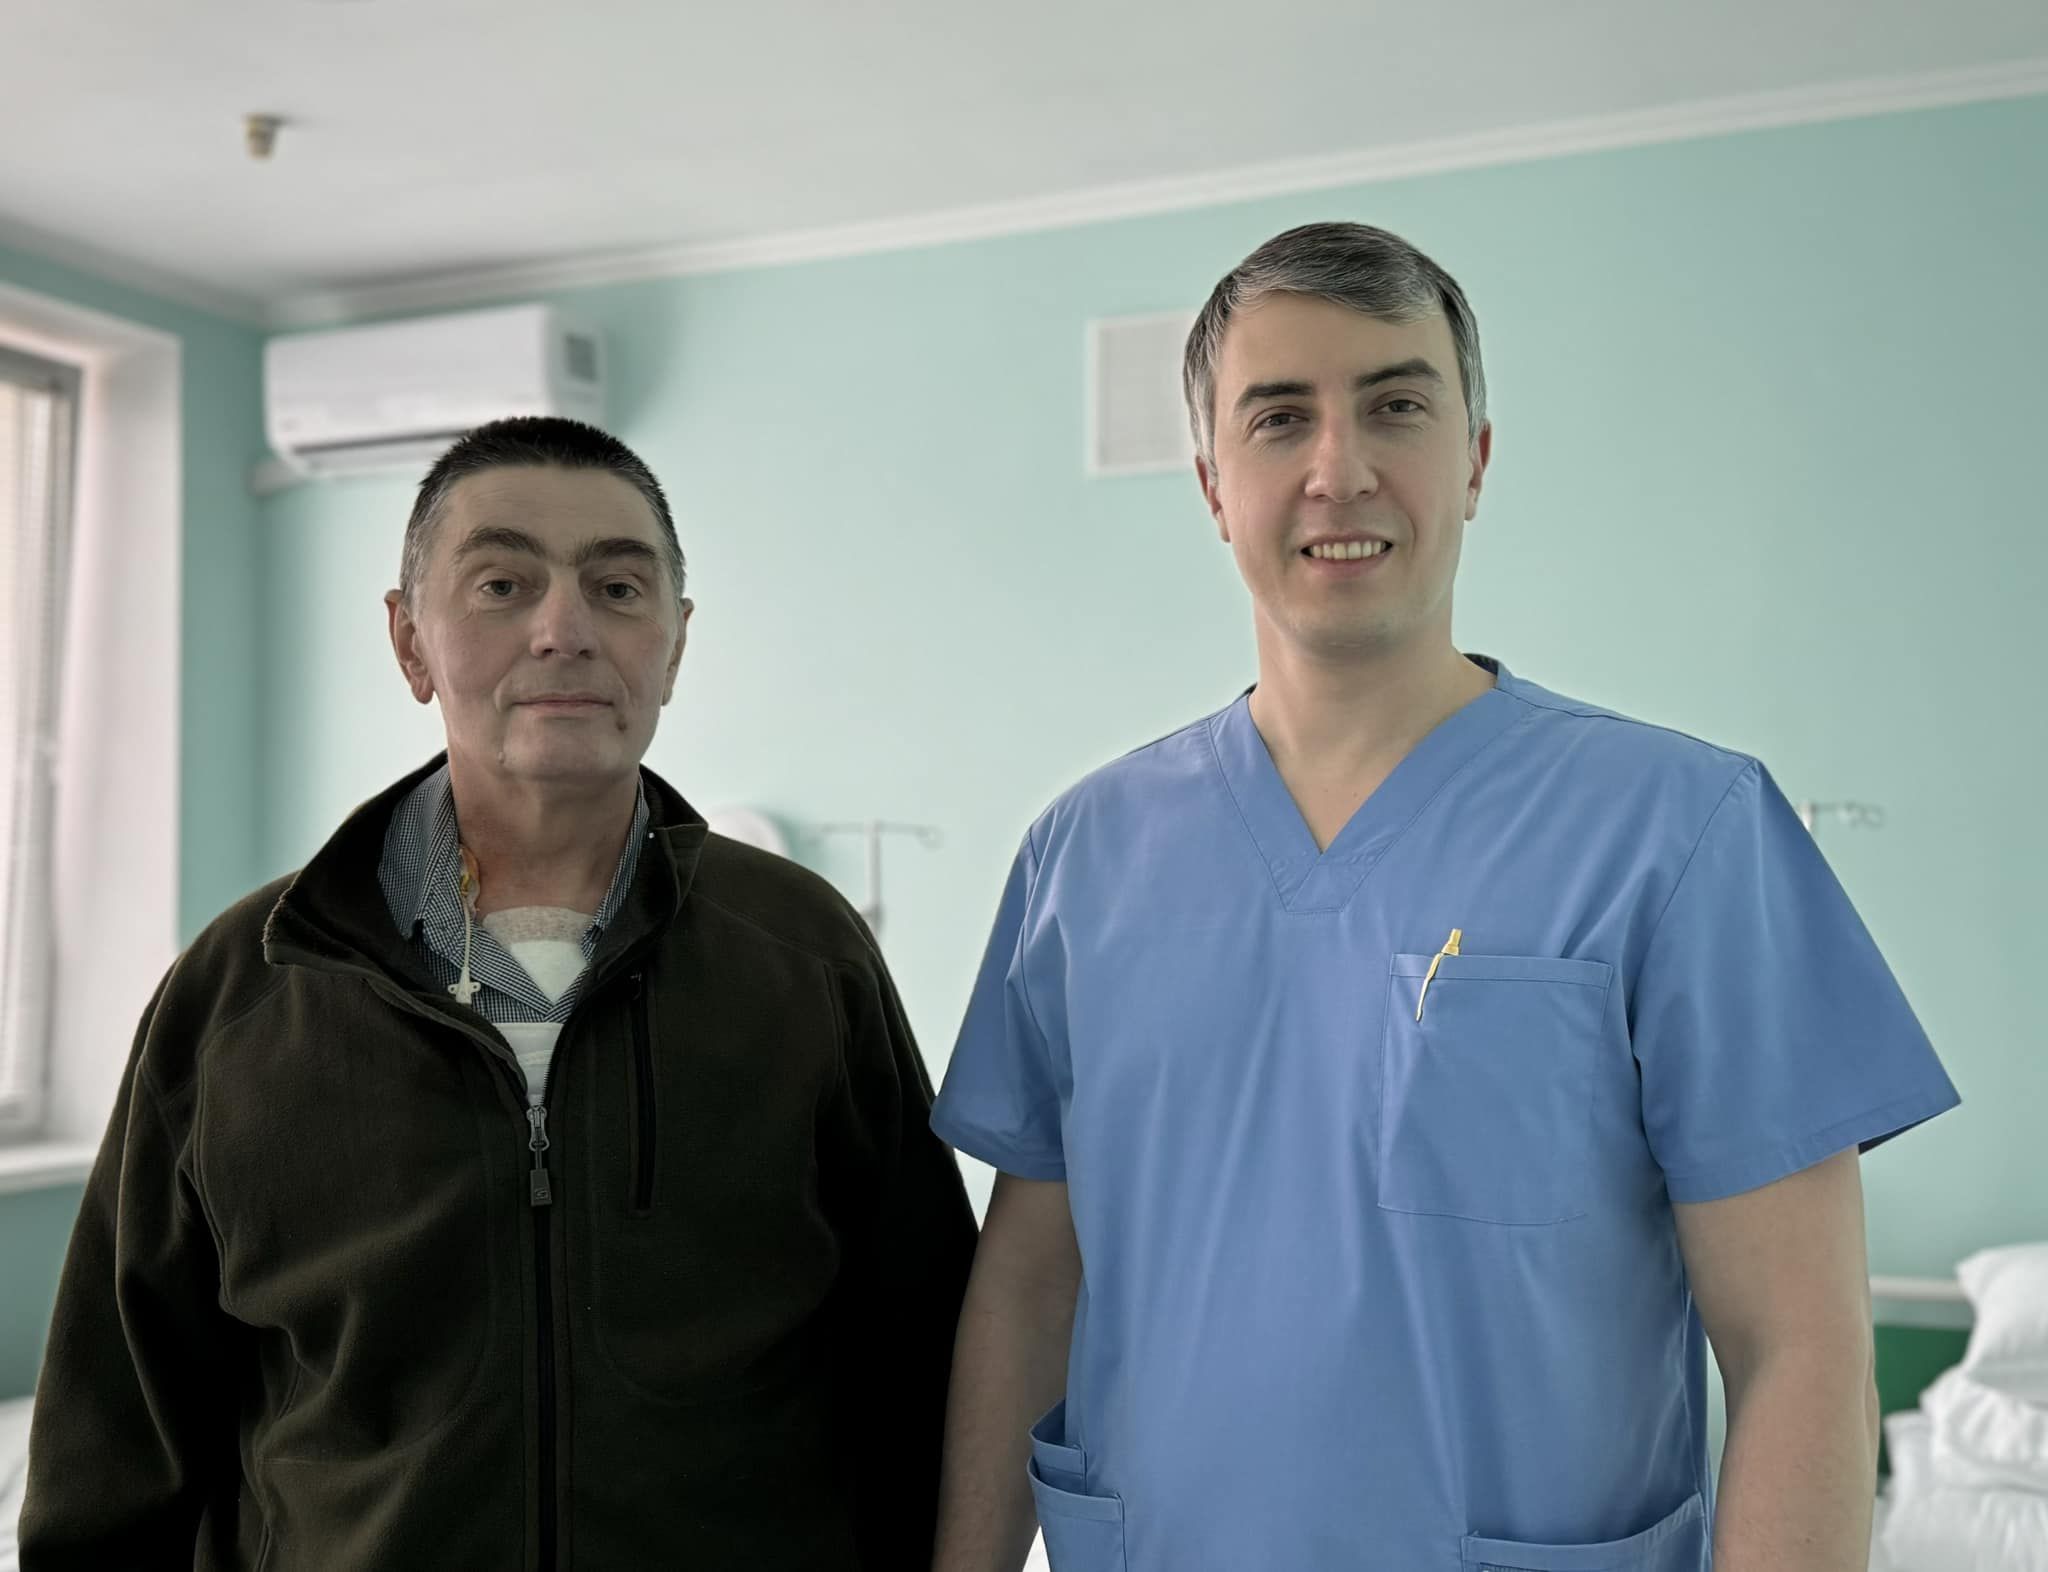 58-річний житель Сміли Олександр Прилуцький із завідувачем  відділення серцево-судинної хірургії Черкаського кардіоцентру  Олегом Журбою.